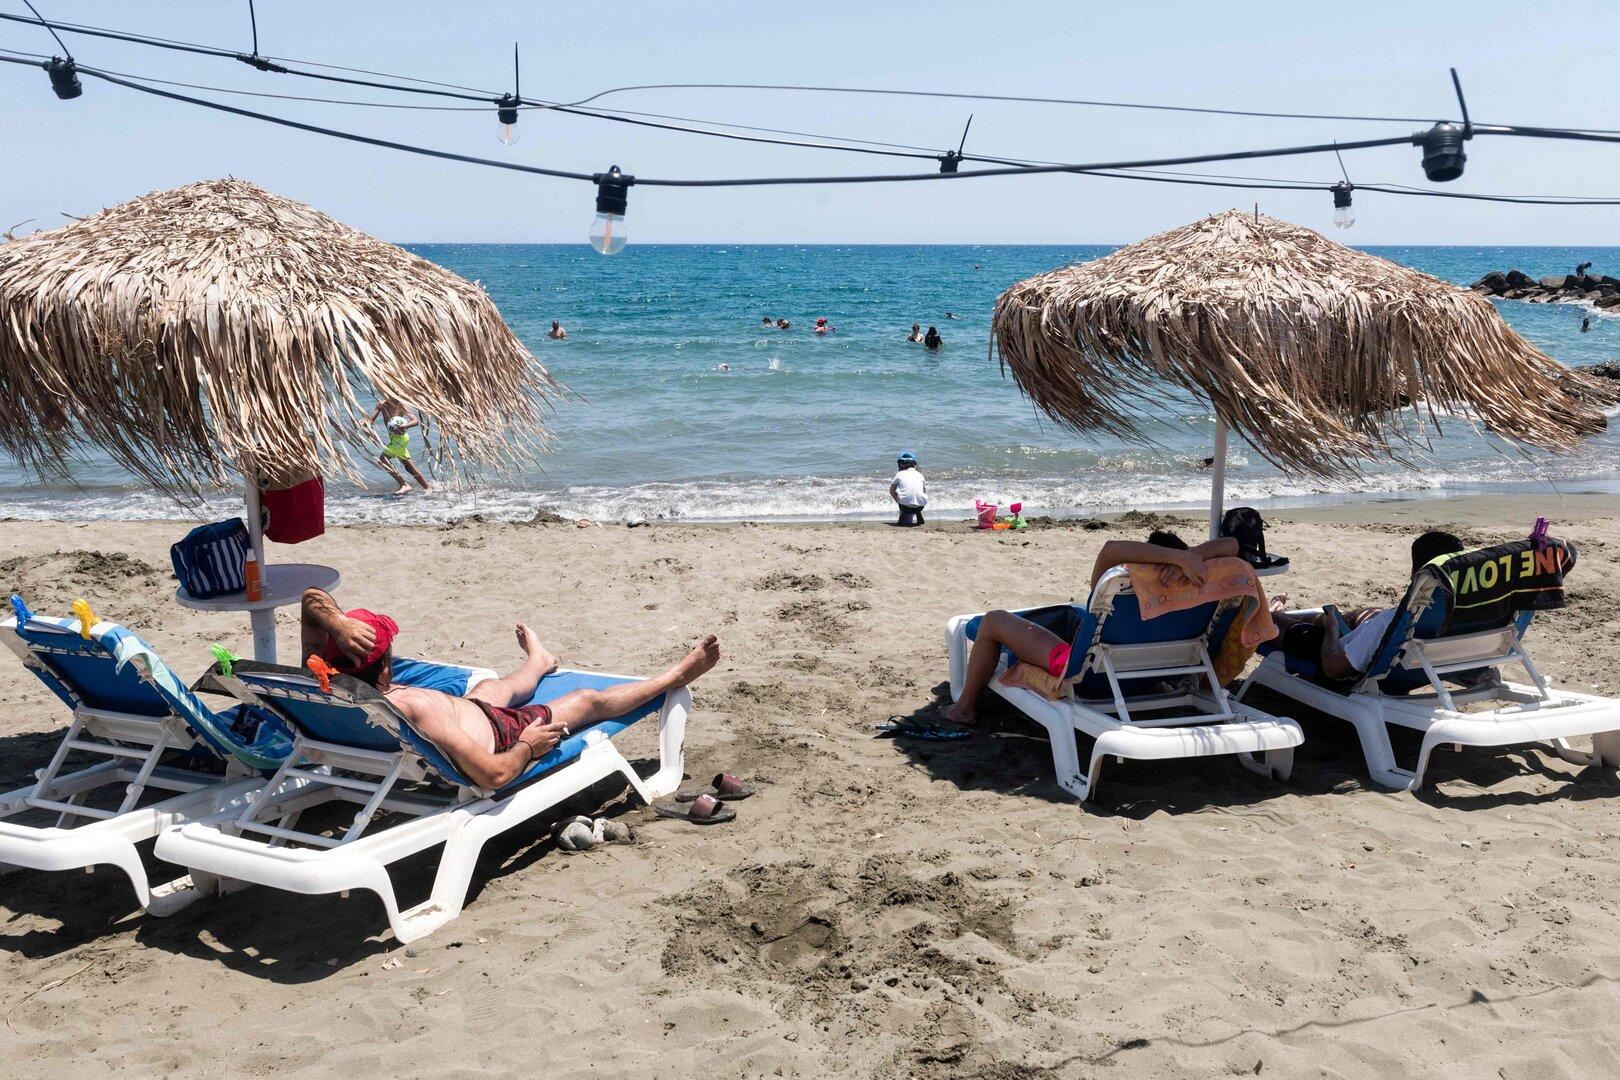 Über 39 Grad in Griechenland: Erster Hitzerekord heuer geknackt